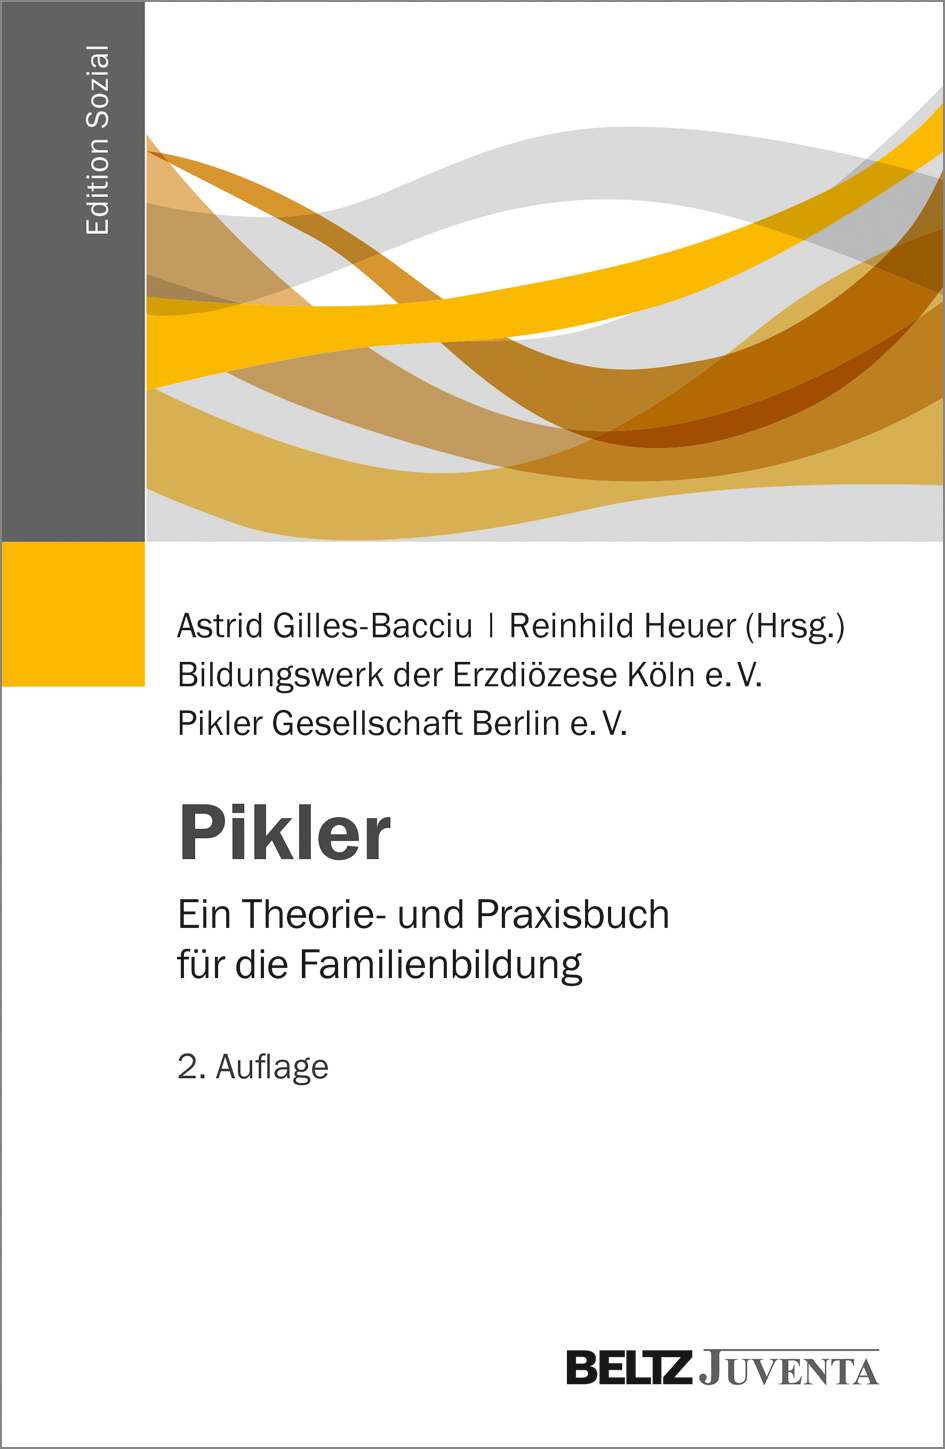 Pikler. Ein Theorie- und Praxisbuch für die Familienbildung (Cover)